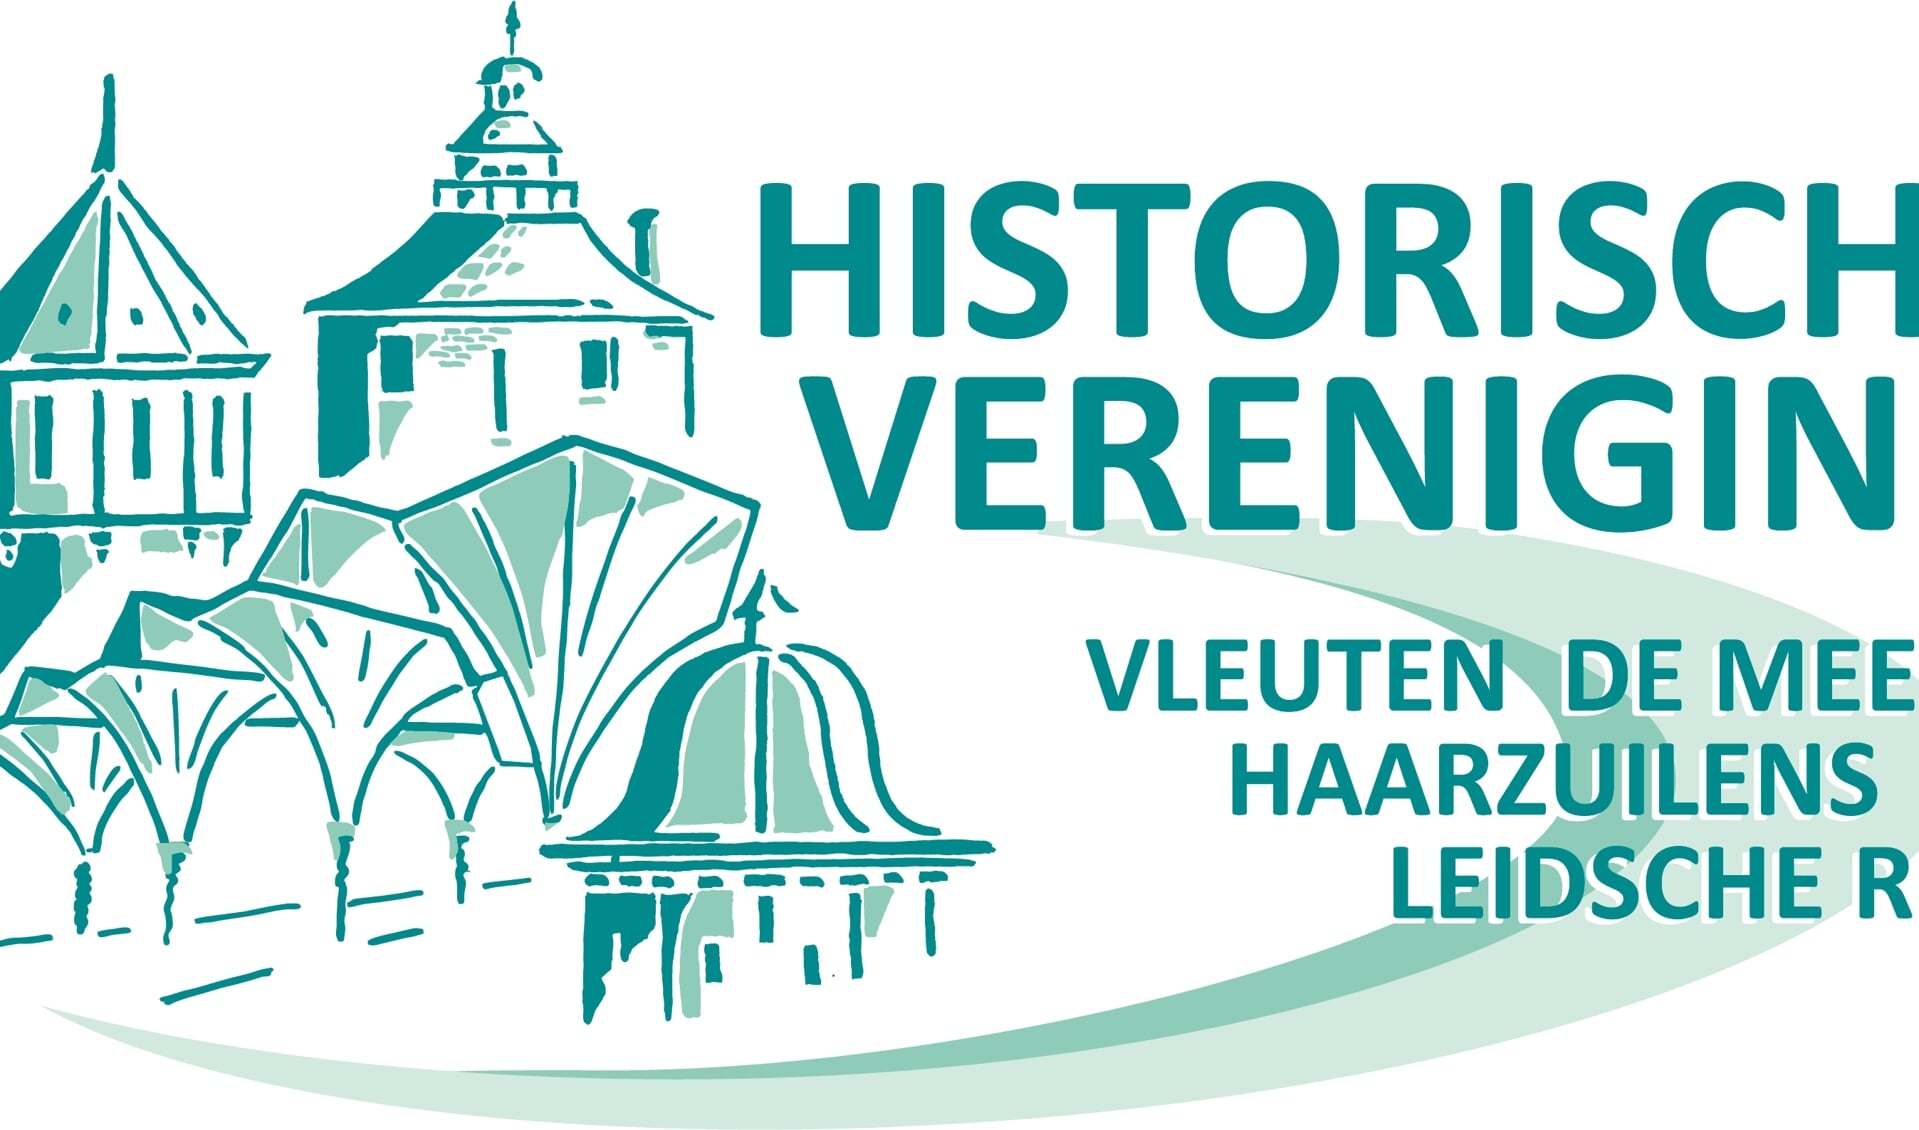 Historische vereniging logo